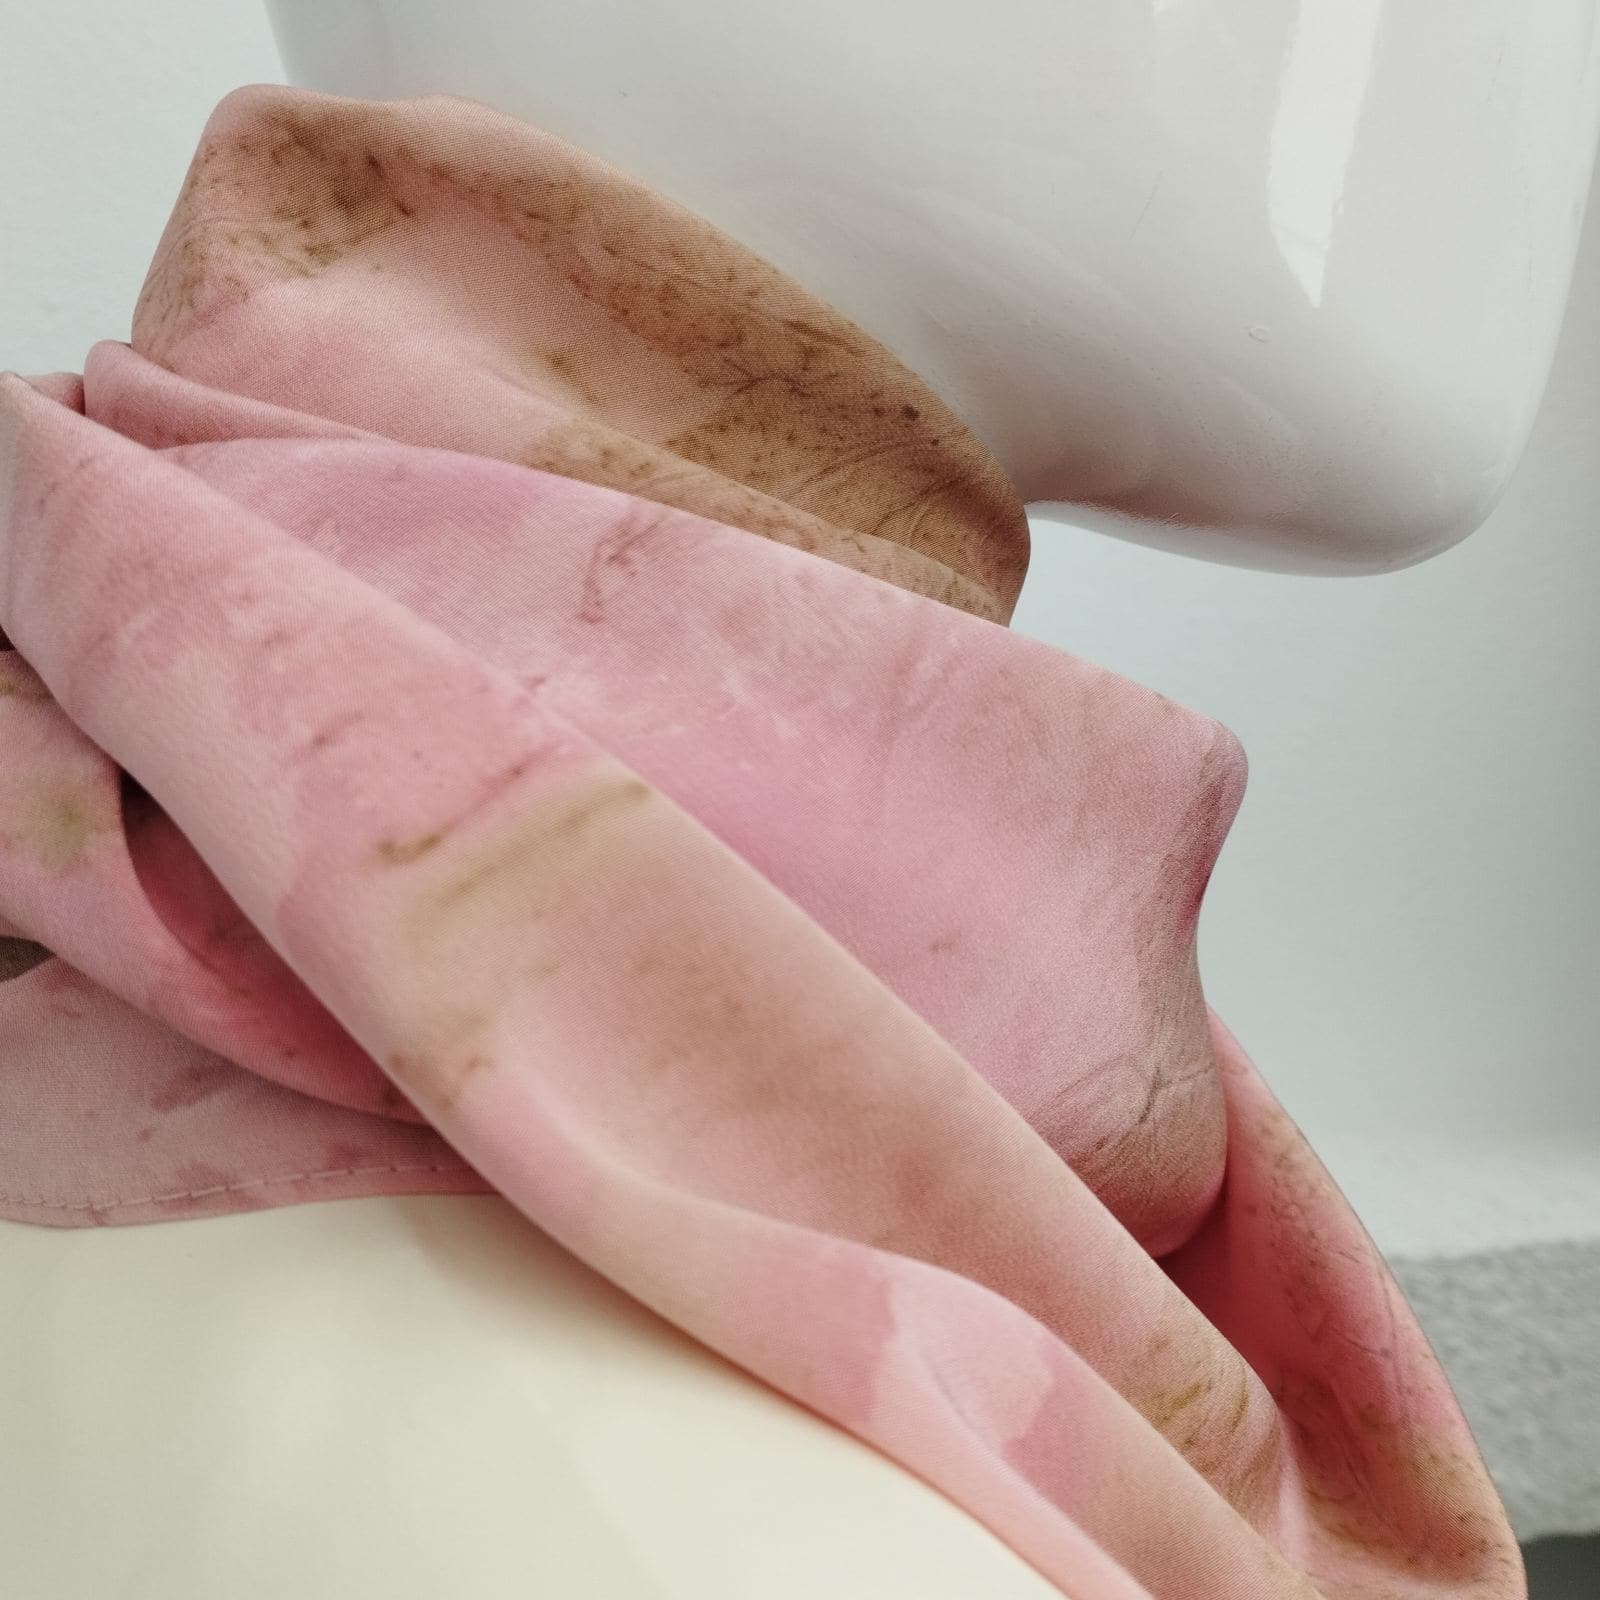 Σύνθεση: Silk 100% Χρώμα: Ροζ Διαστάσεις: 0,95 X 0,95 Φροντίδα: Dry Clean 